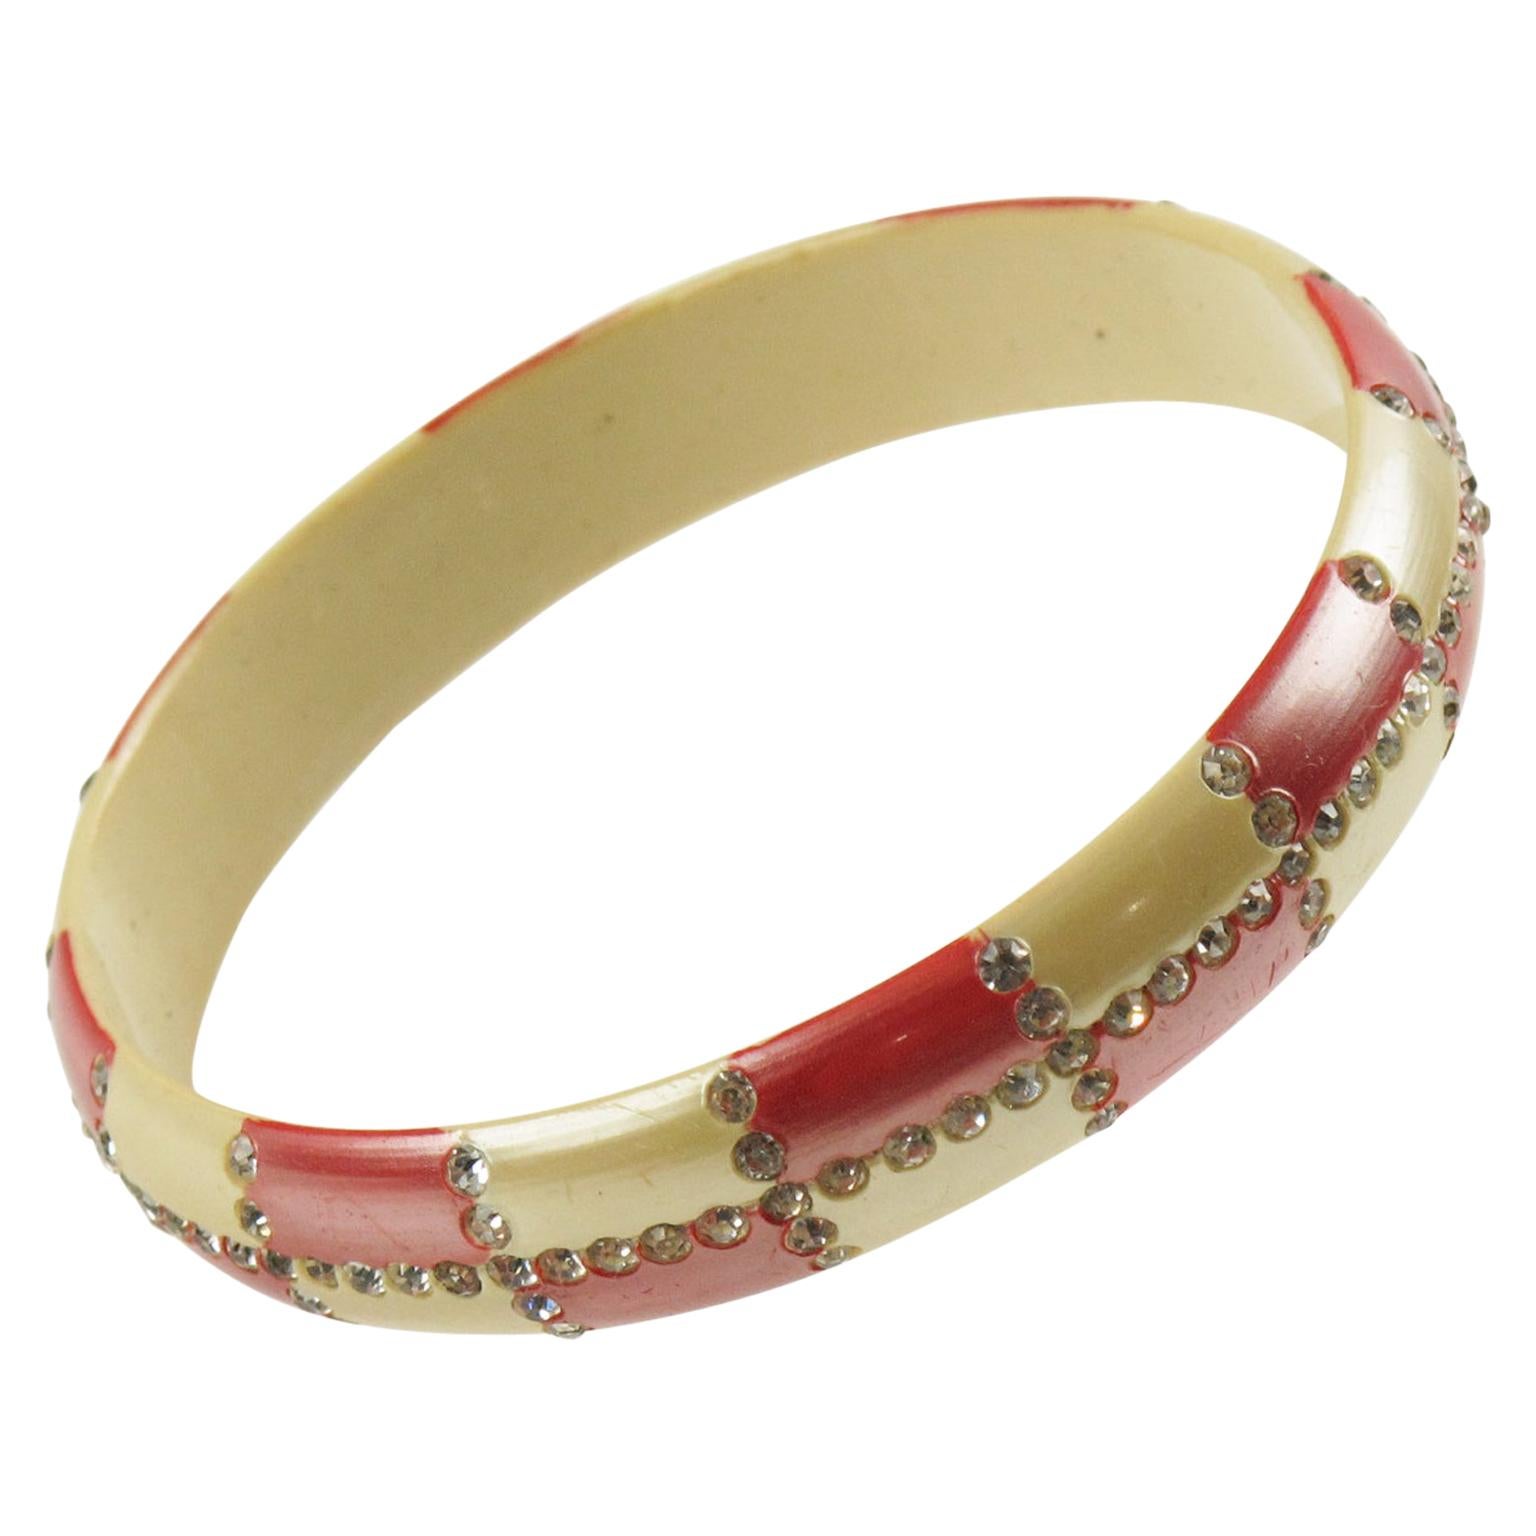 French Celluloid Geometric Jeweled Bracelet Bangle